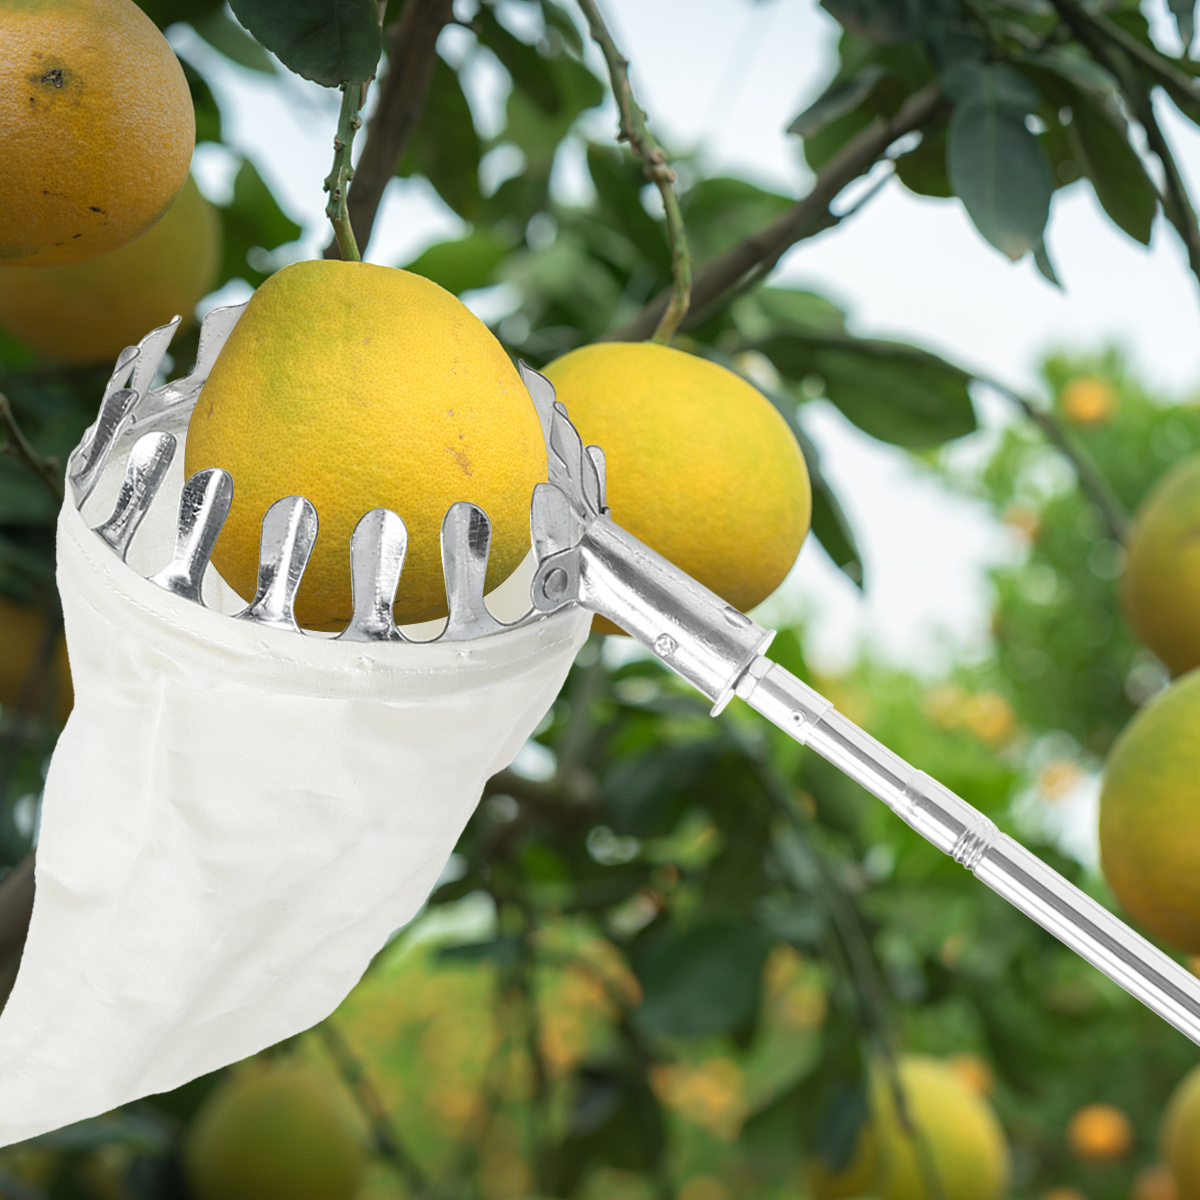 Raccoglitore di frutta 4 m con manico telescopico, Manico estendibile per  raccogliere la frutta - Costway